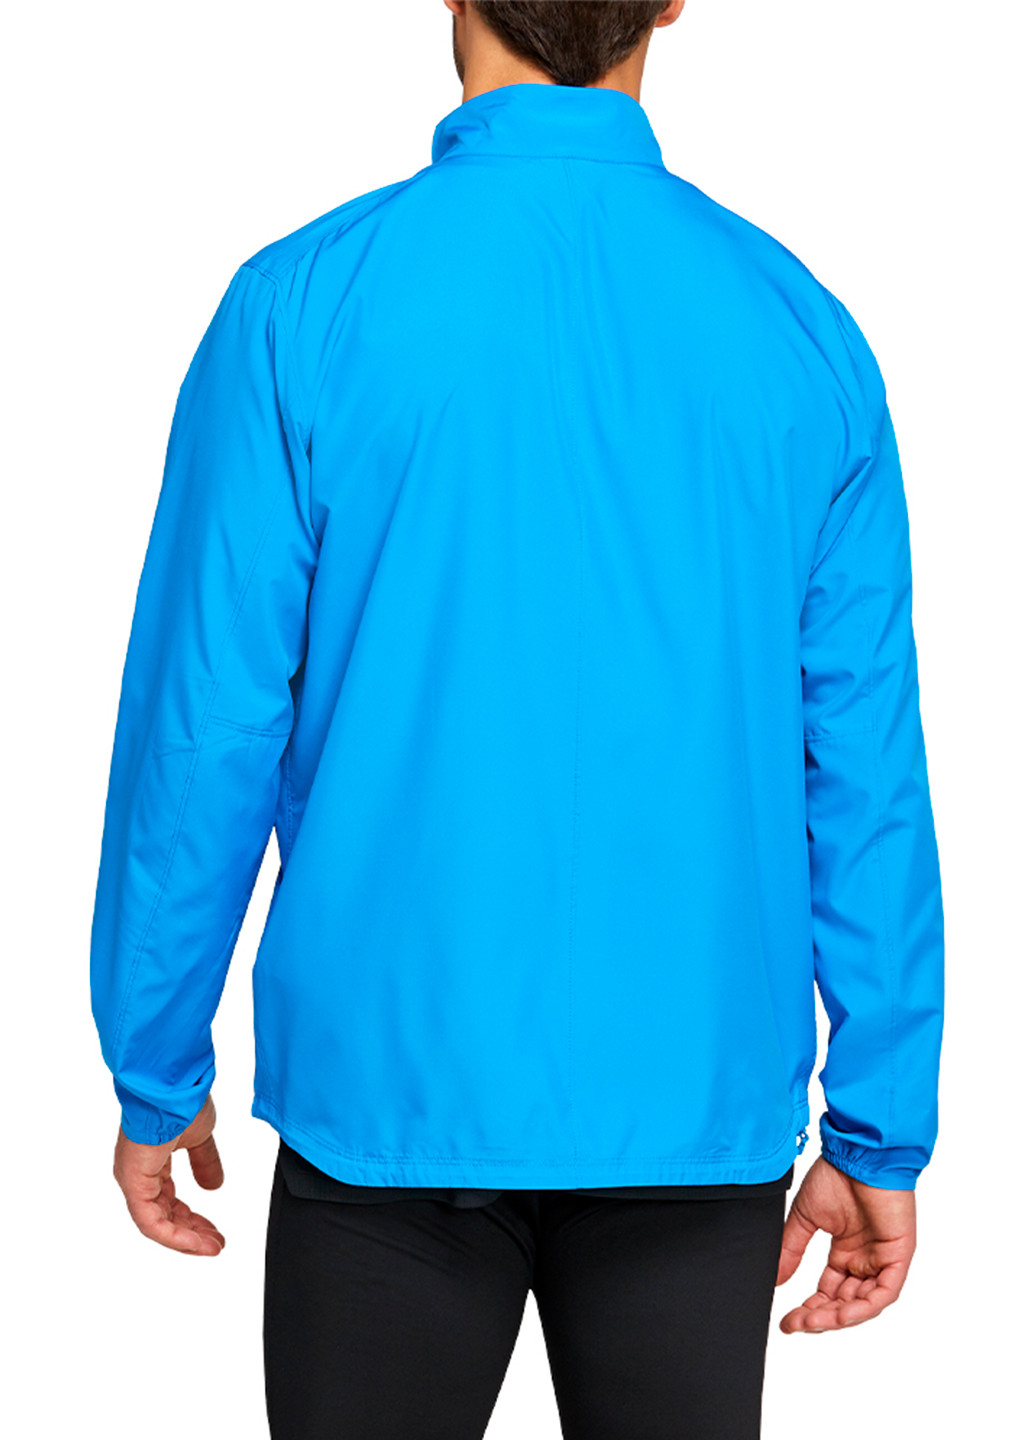 Светло-синяя демисезонная мужская куртка Asics Silver